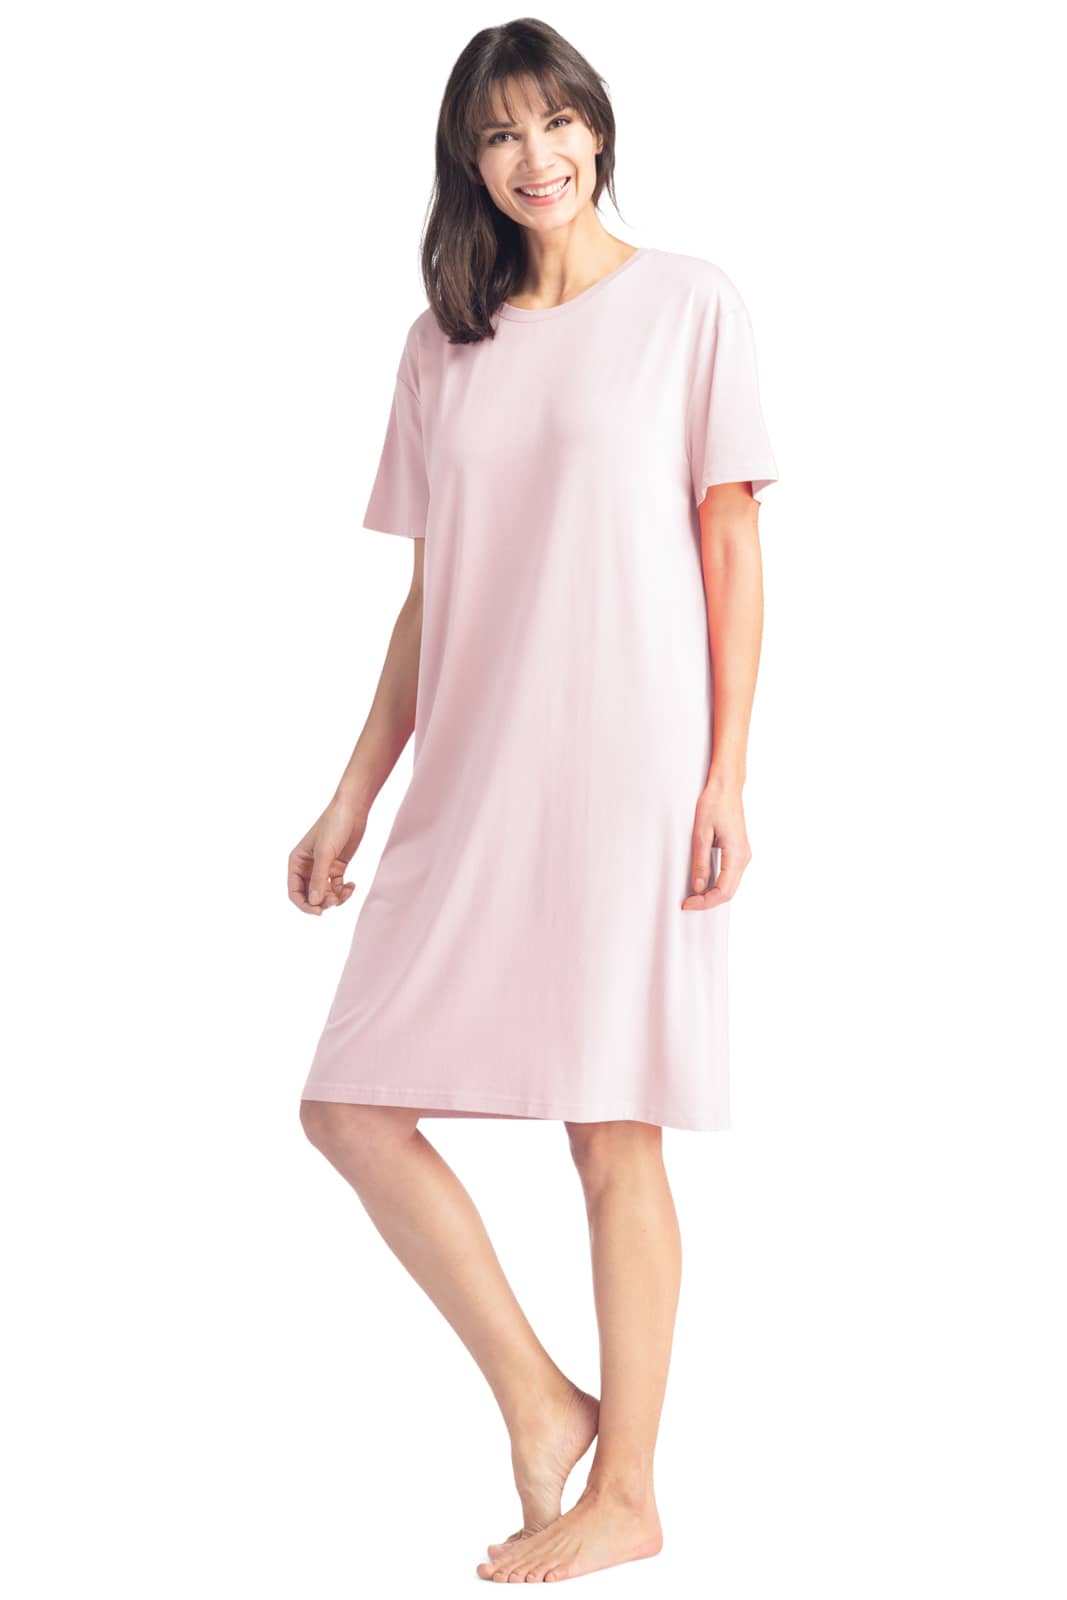 Women's Nightgown, Cotton Bamboo T Shirt Nightgown